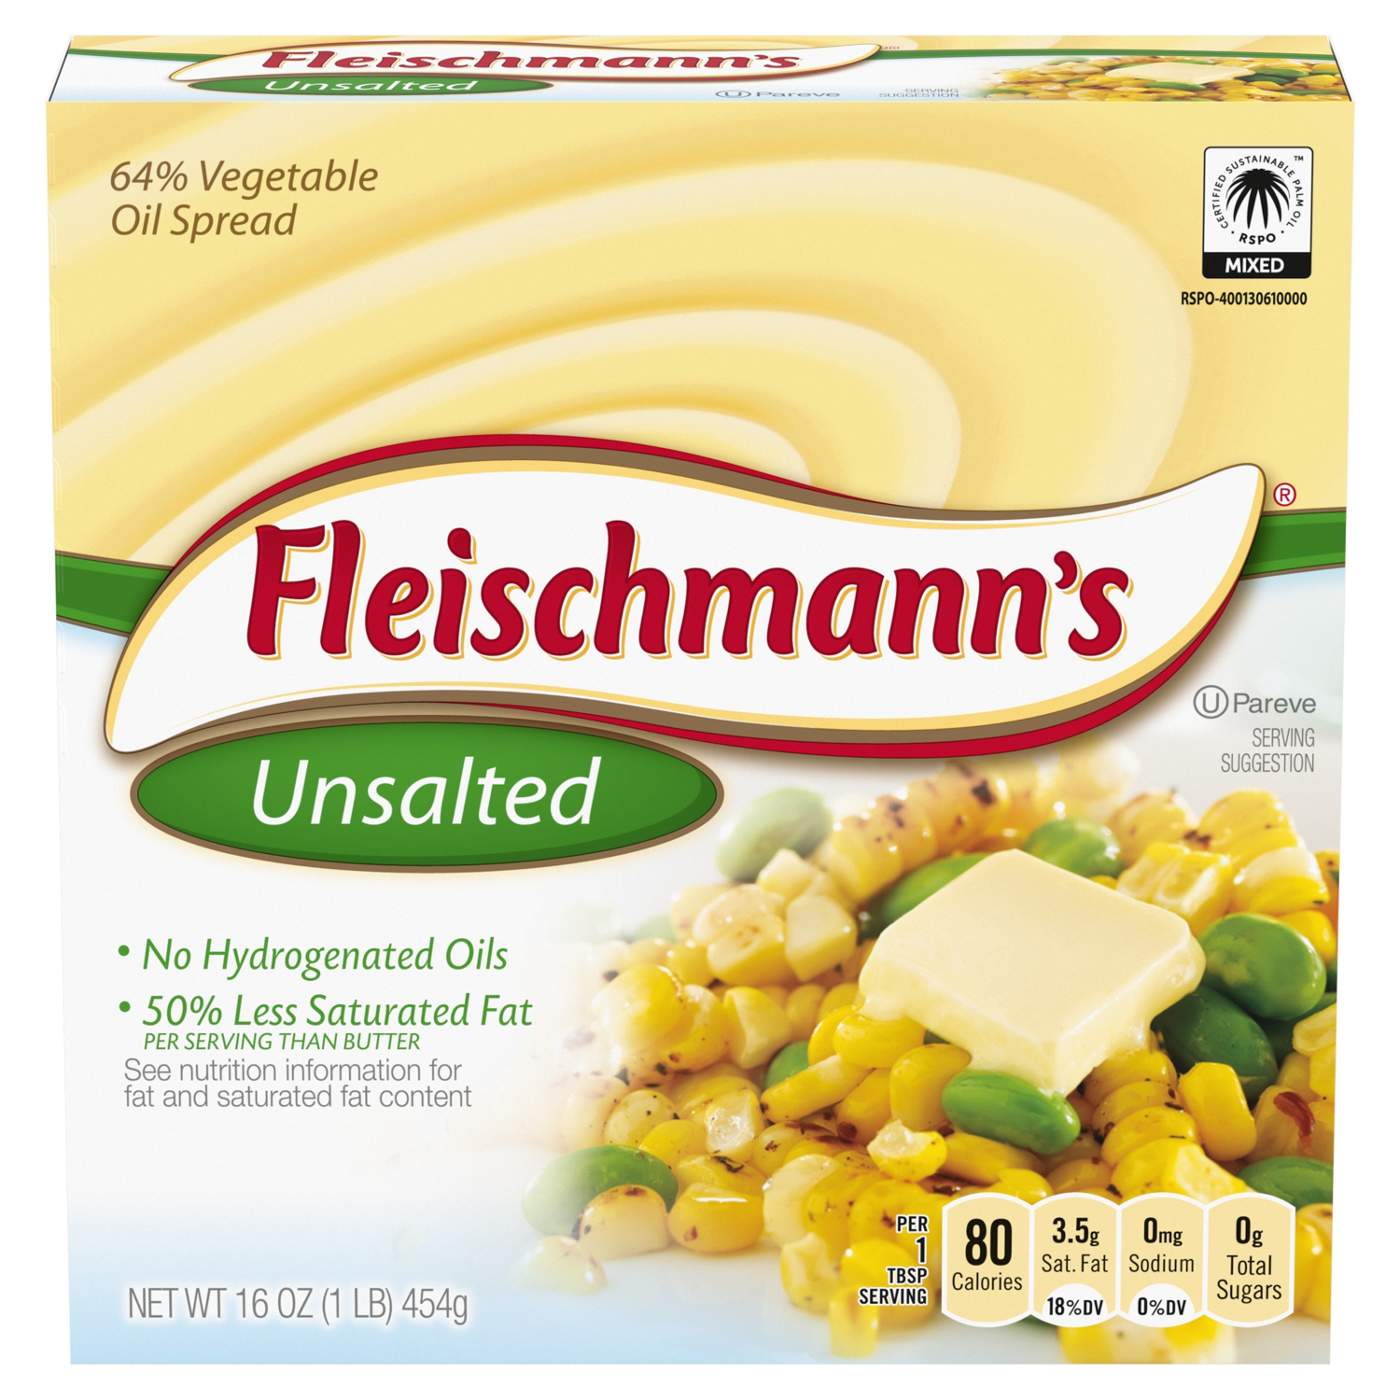 Fleischmann's Unsalted Vegetable Oil Spread Sticks; image 1 of 4